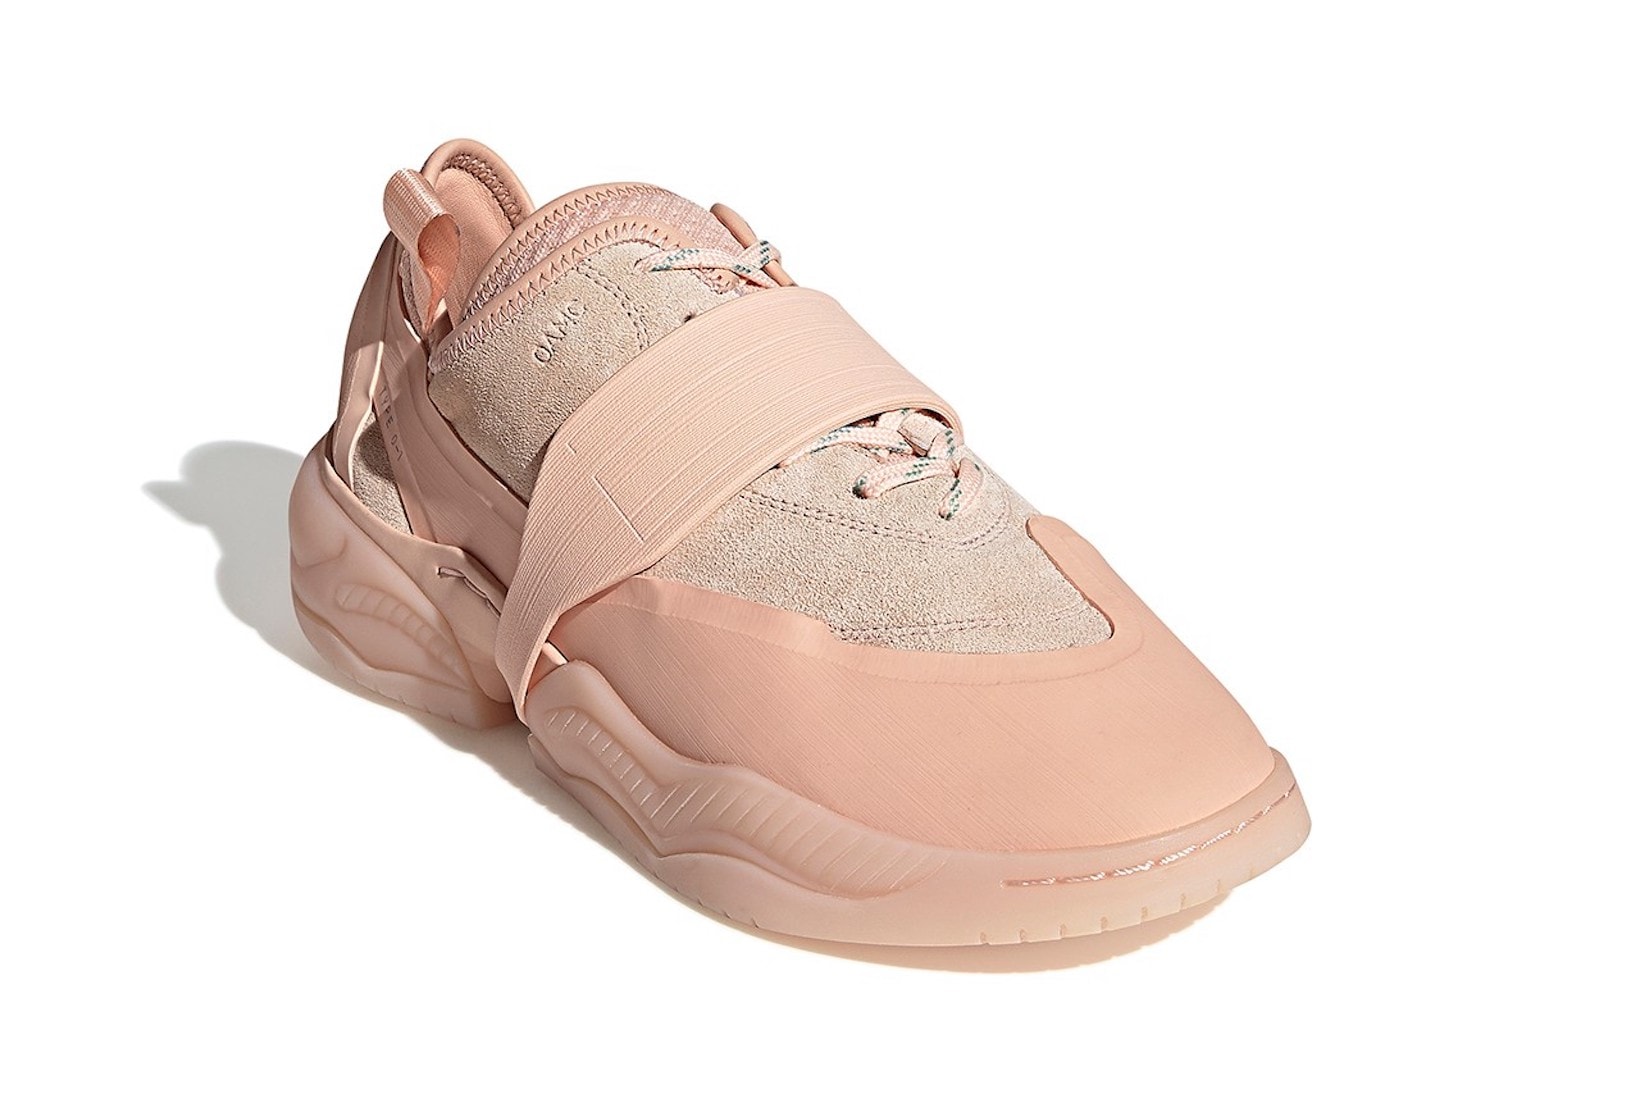 adidas originals oamc type 01 sneakers off white pink green release date footwear shoes sneakerhead Luke Meier